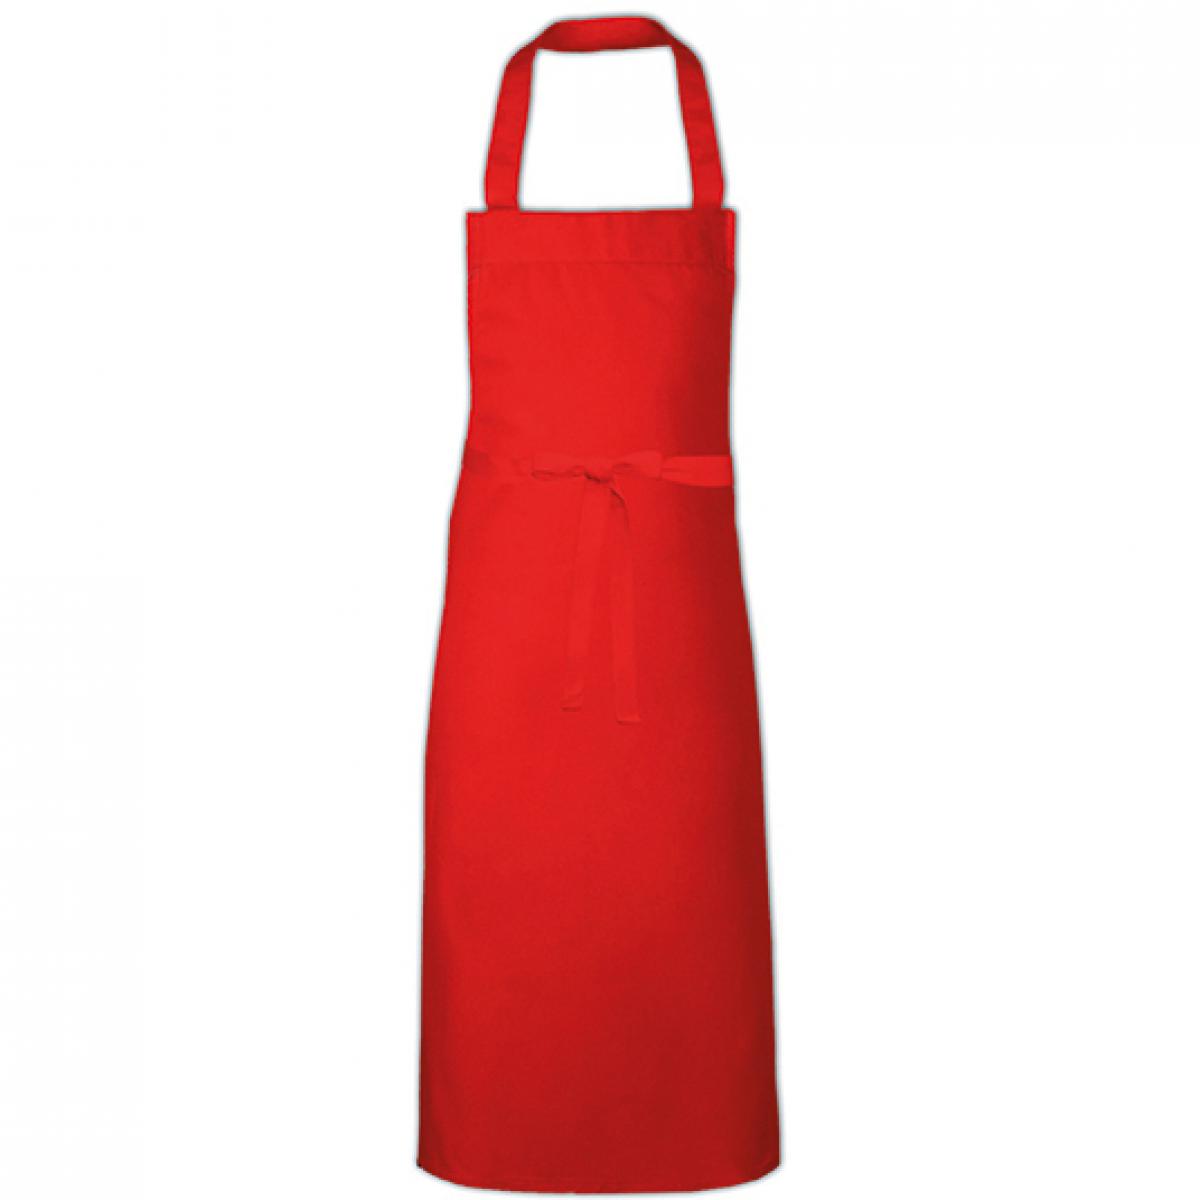 Hersteller: Link Kitchen Wear Herstellernummer: BBQ11073 Artikelbezeichnung: Barbecue Apron XL - 73 x 110 cm - Waschbar bis 60 °C Farbe: Red